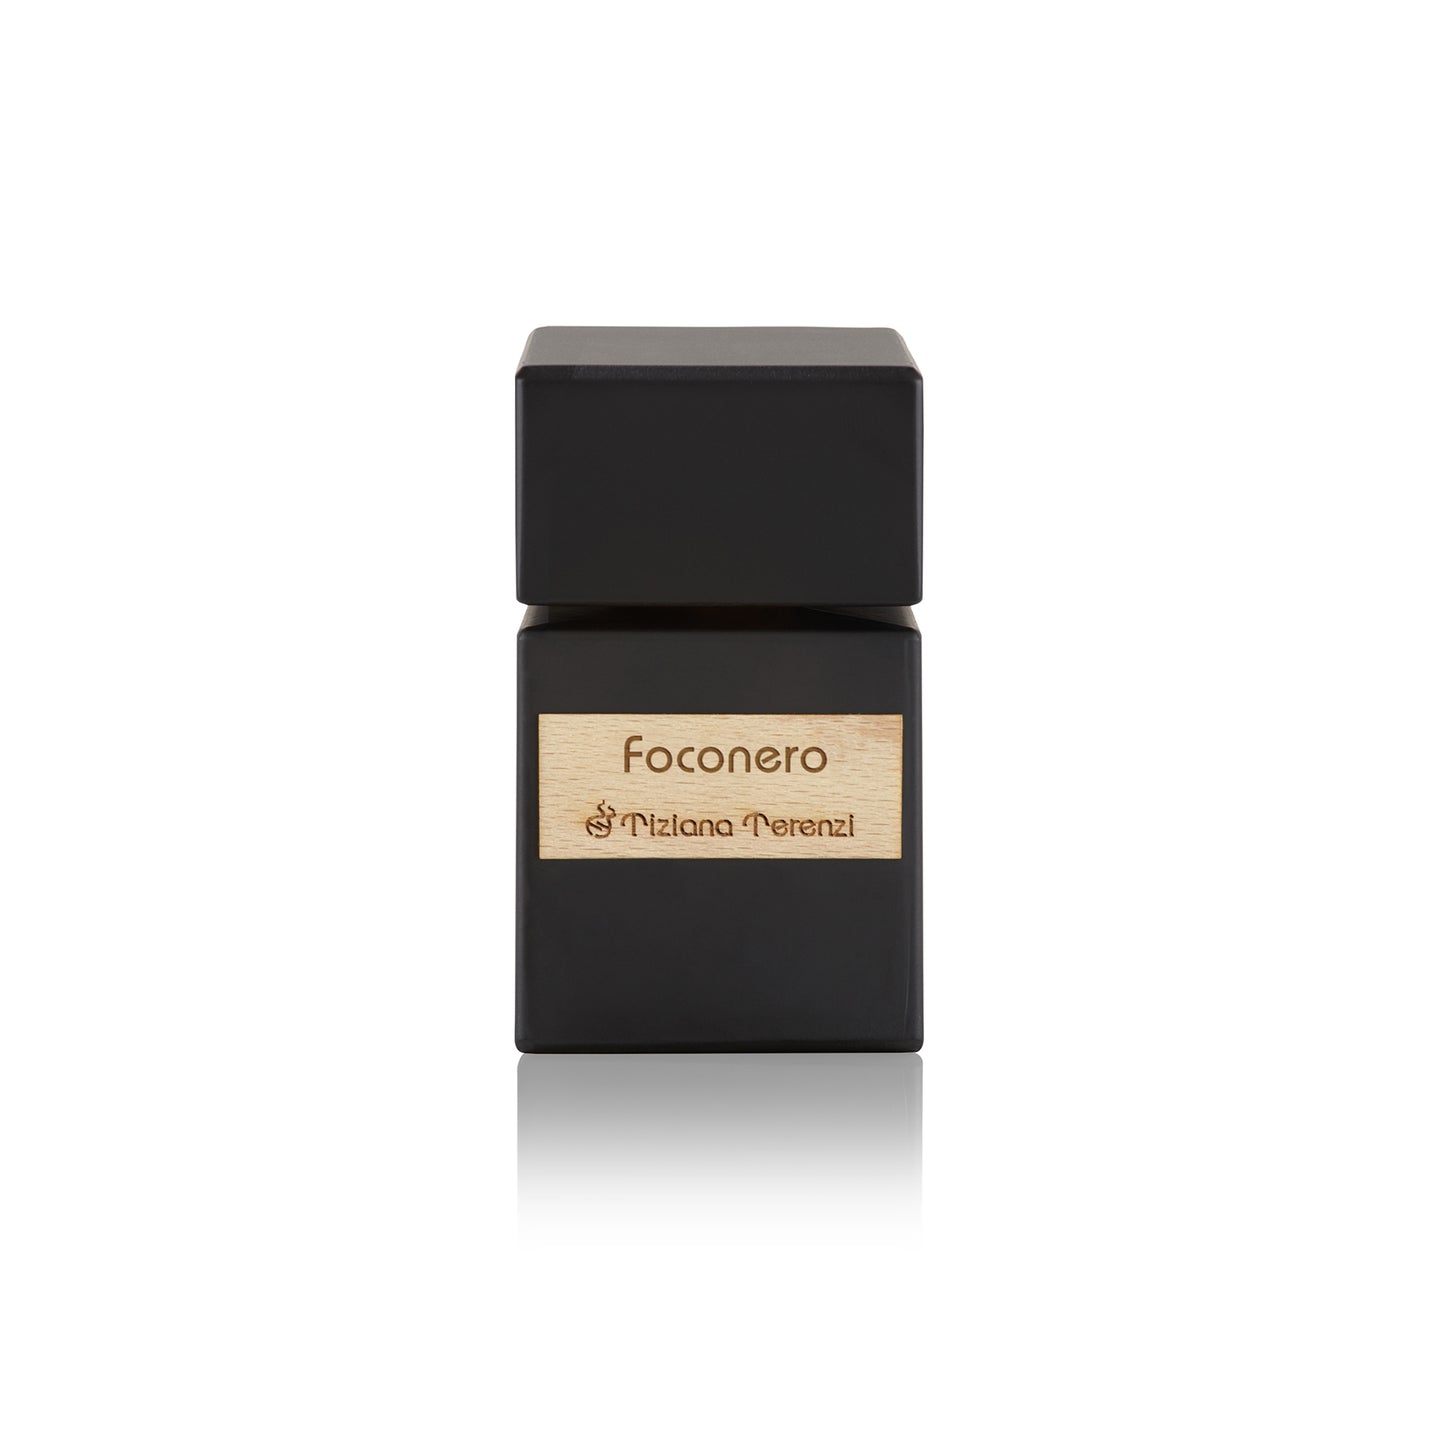 Foconero 3.4oz Extrait de Parfum